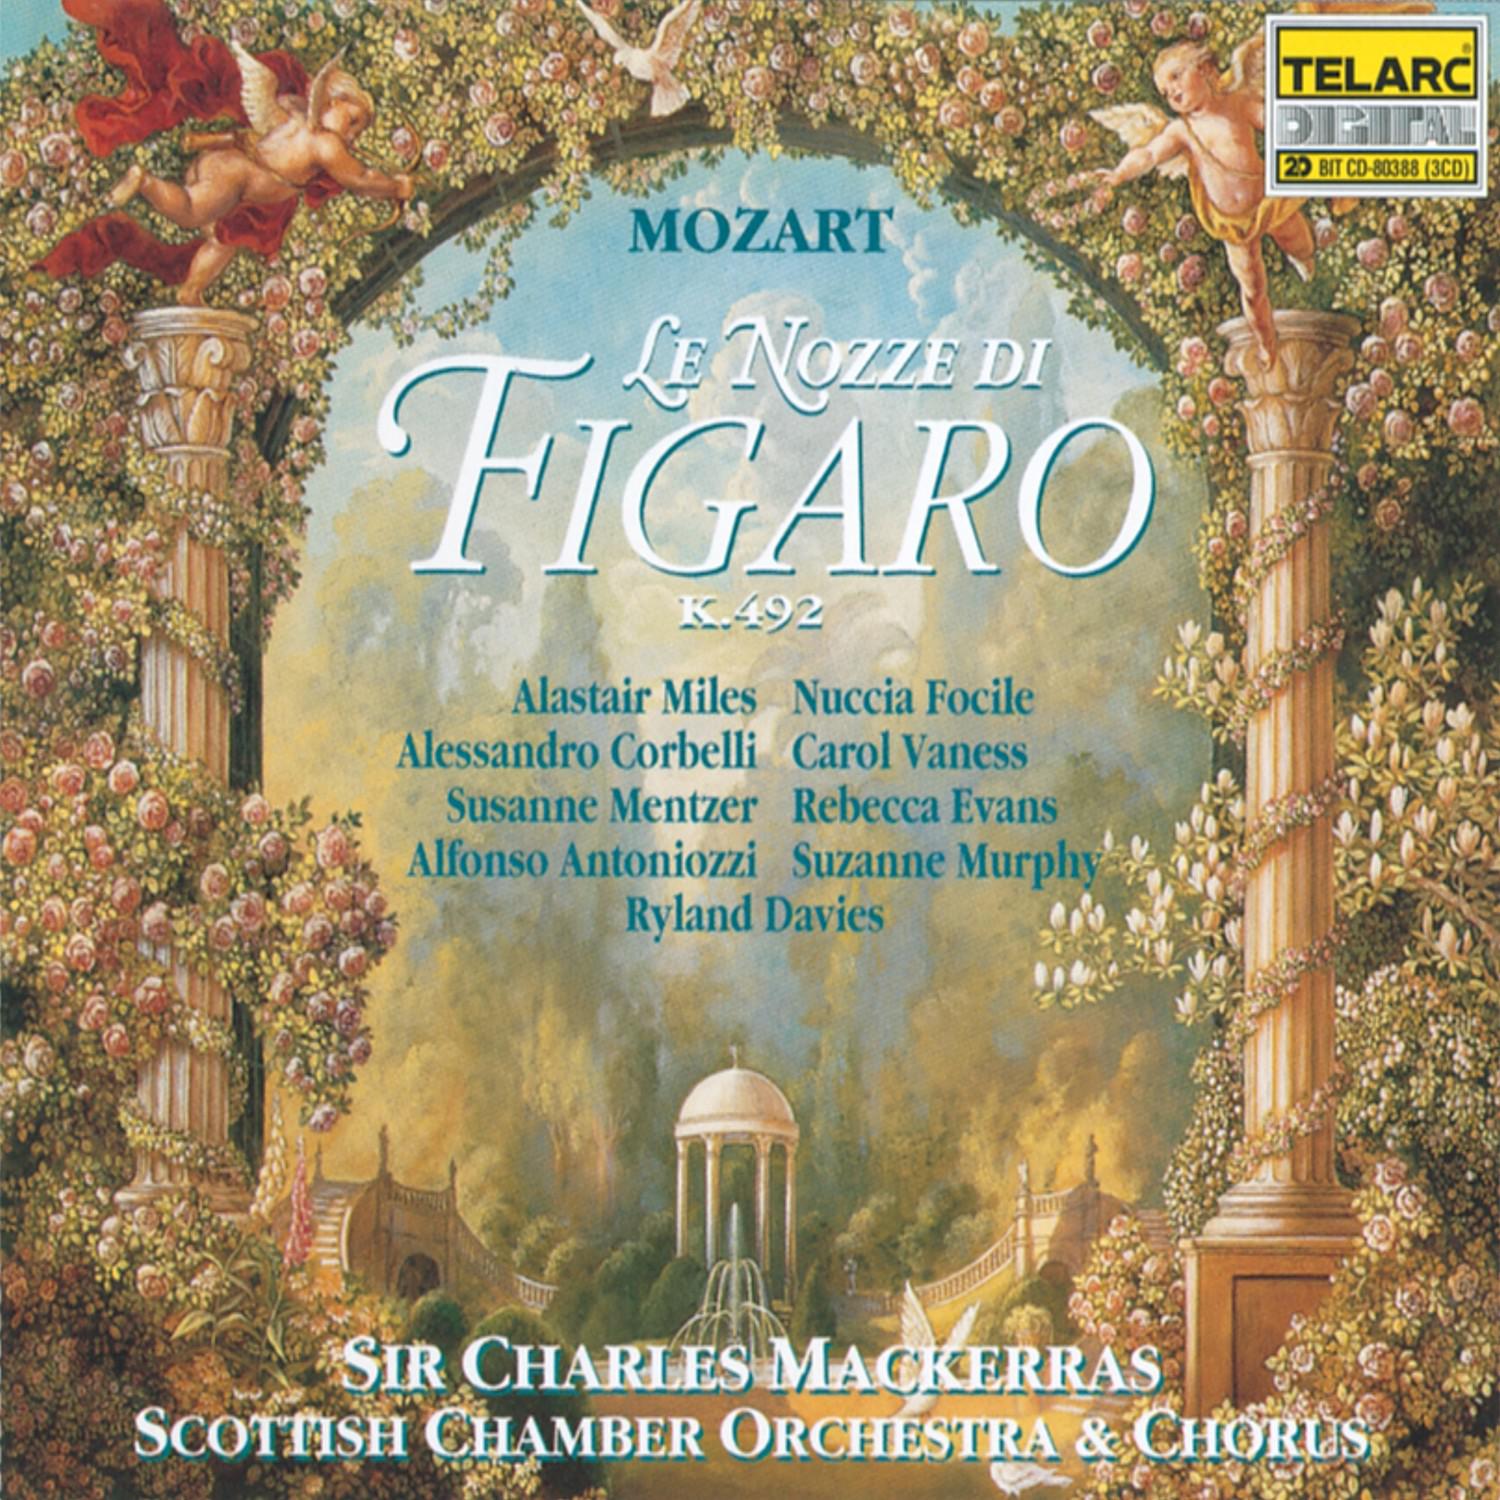 Marriage of Figaro: Recitativo: " Signor se trattenete"